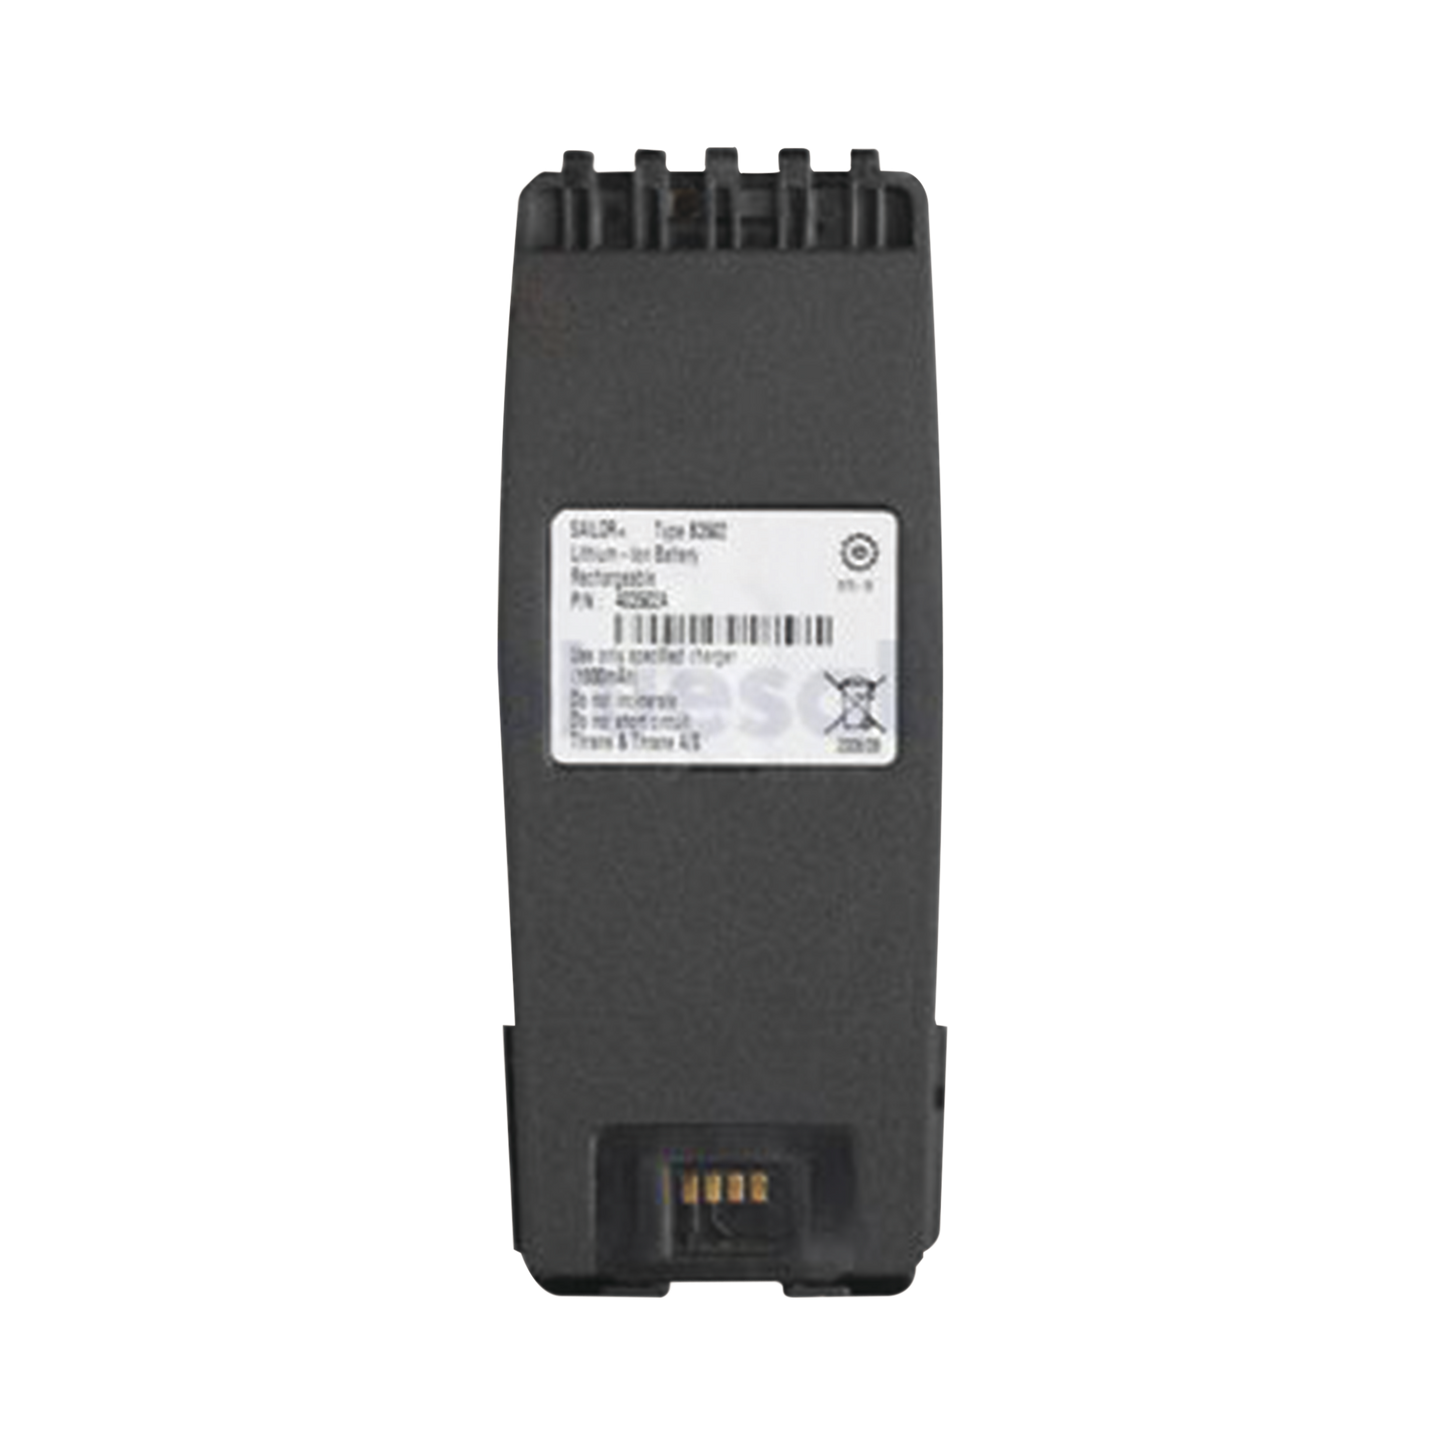 Batería de Li-ion recargable de 15.2 Wh / 1800 mAh para radios SAILOR serie SP3500